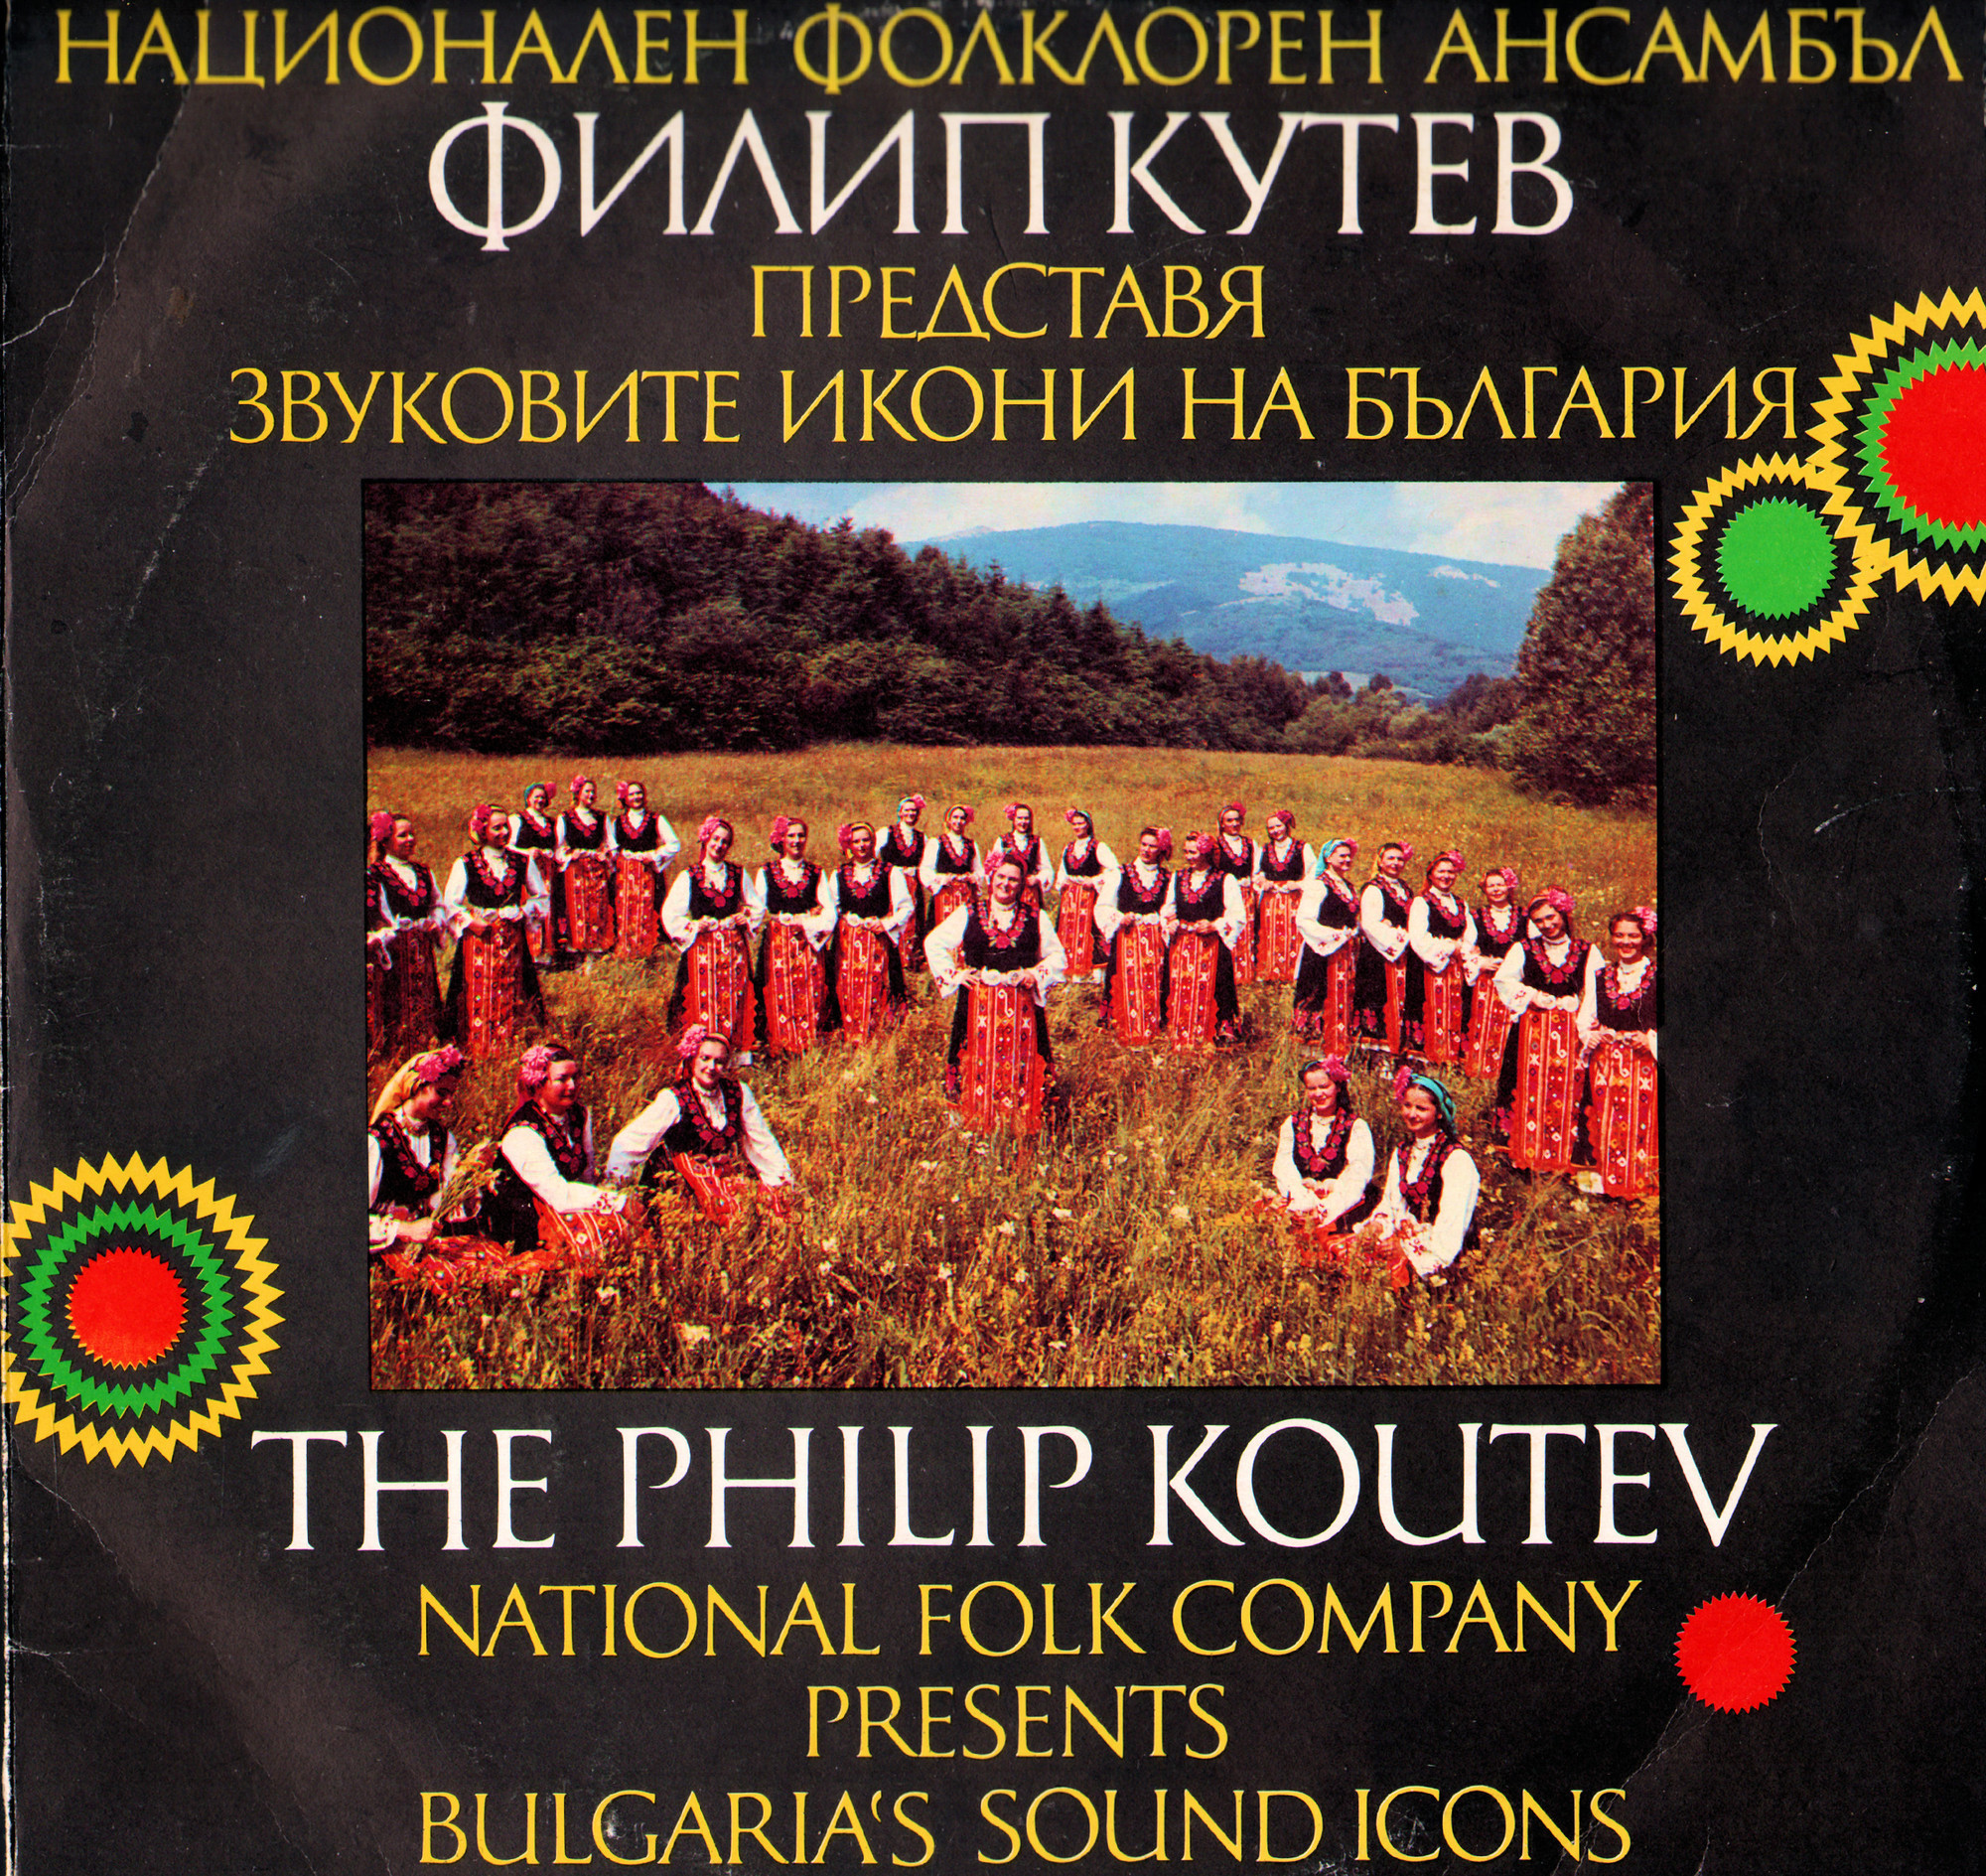 Национален фолклорен ансамбъл Филип Кутев представя Звуковите икони на България